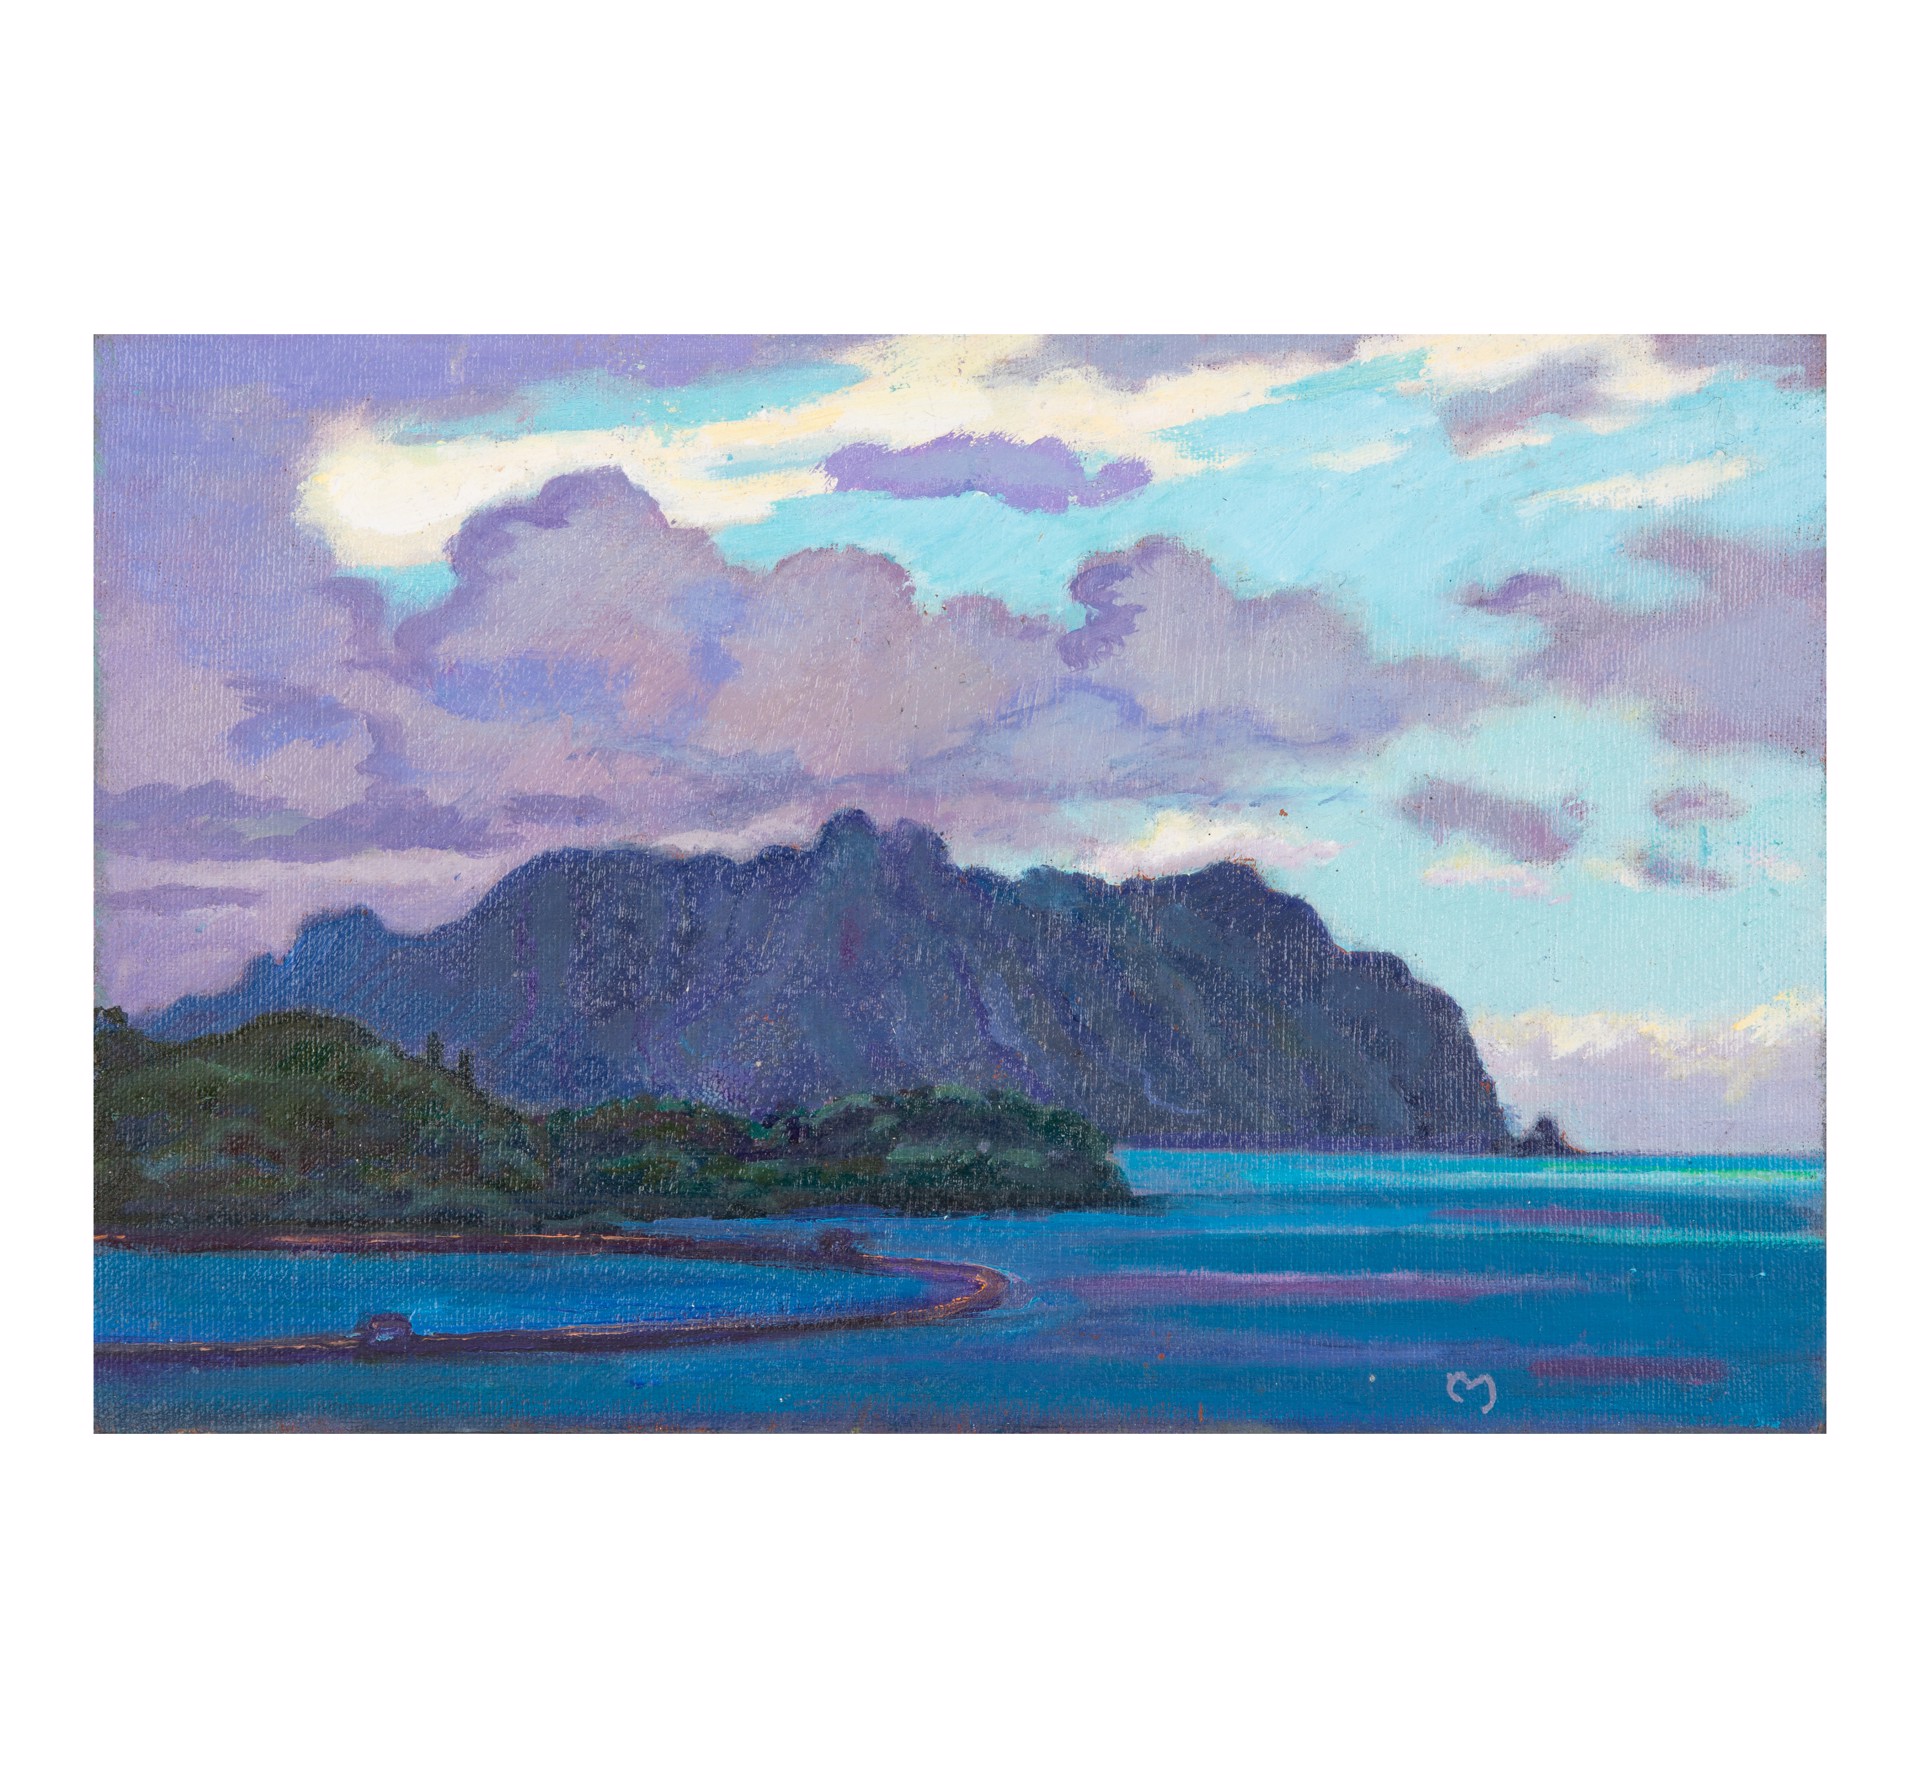 Kāneʻohe Bay by Dennis Morton